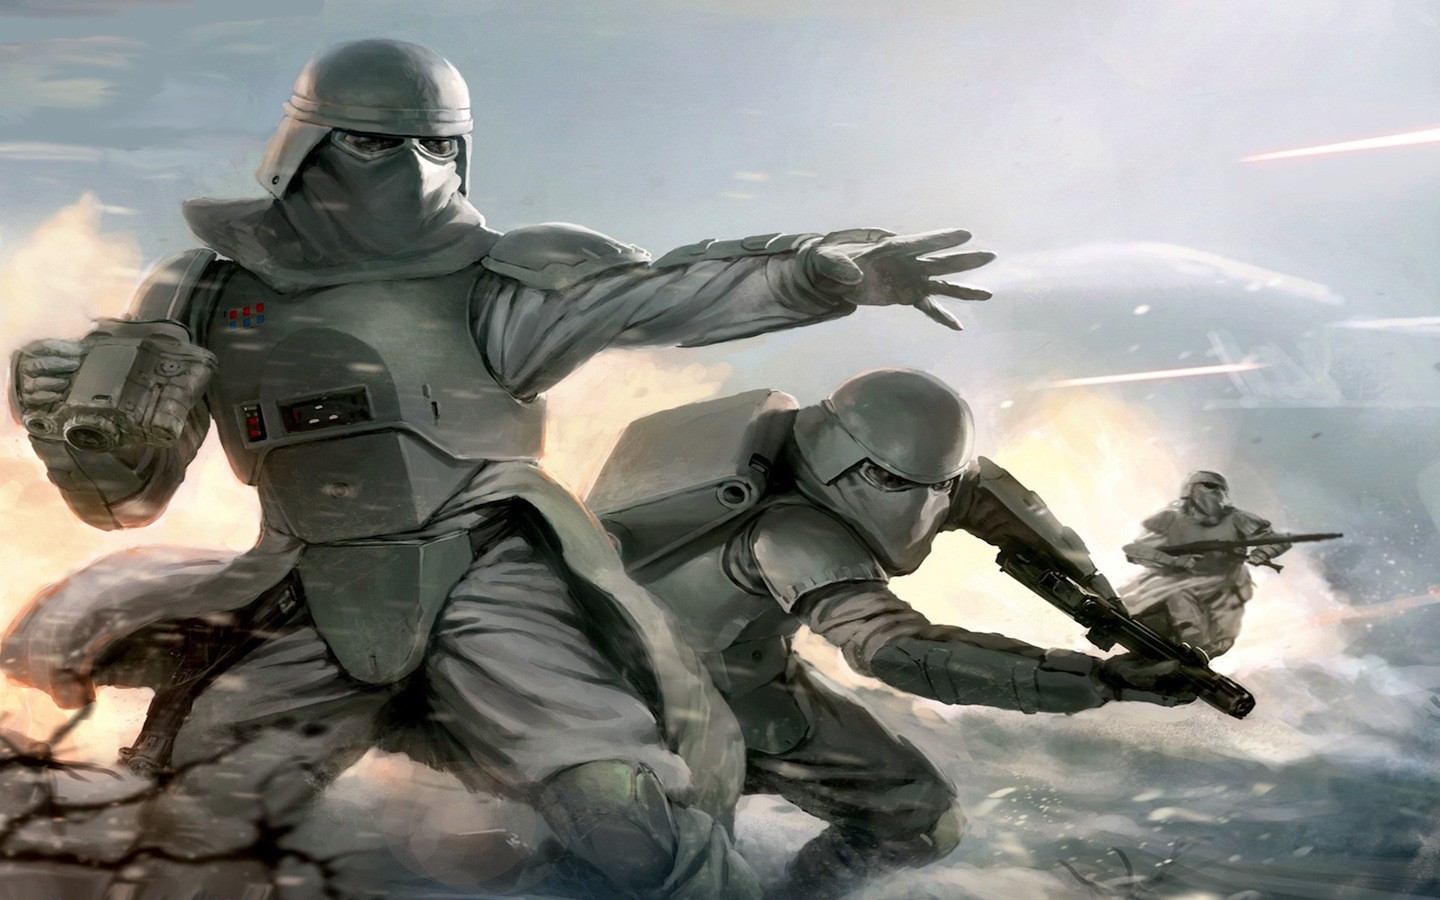 Wallpaper Star Wars Soldier Stormtrooper Episode V